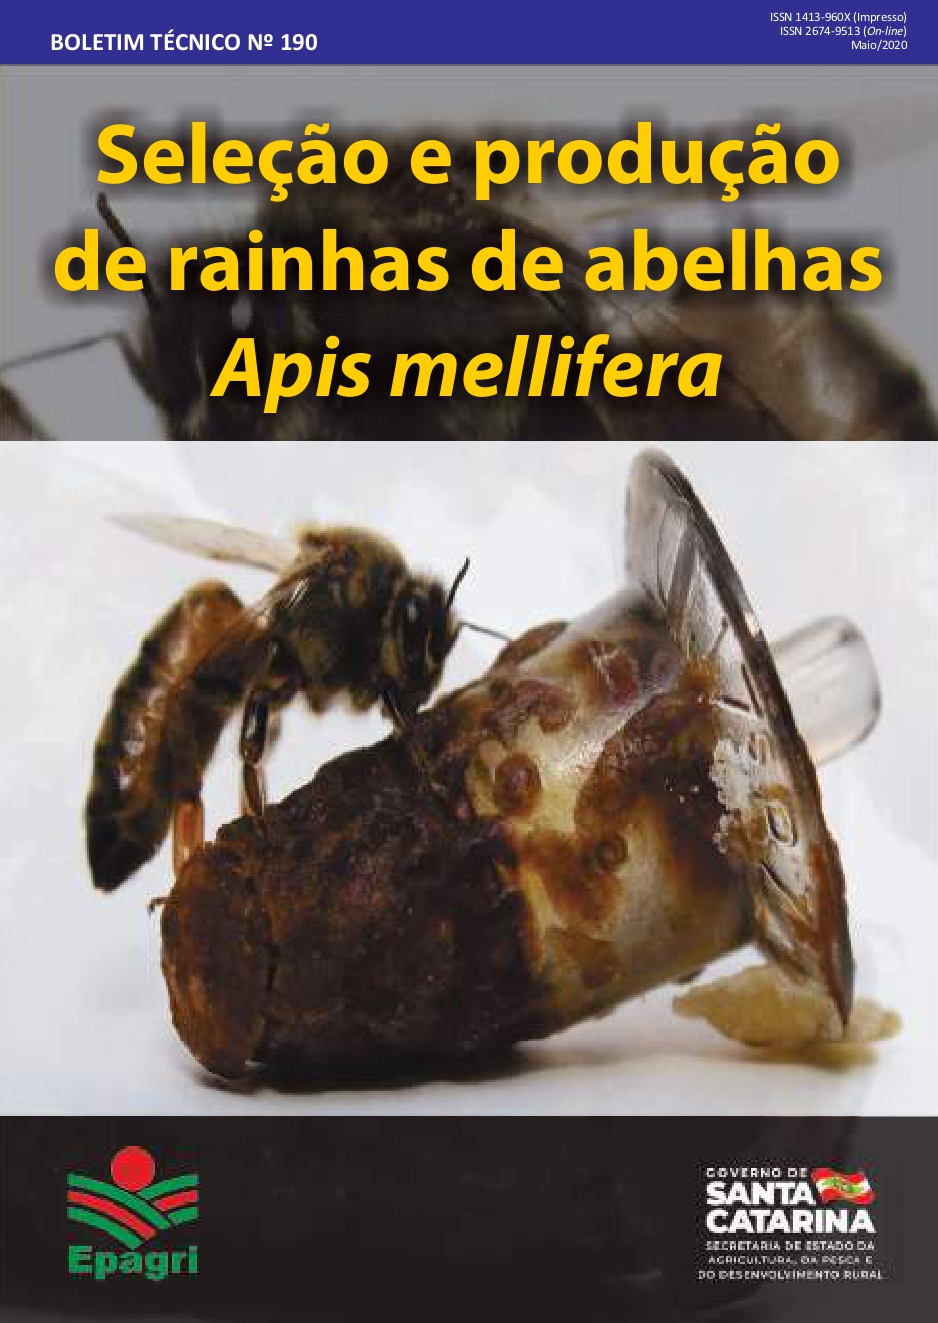 					View No. 190 (2020): Seleção e produção de rainhas de abelhas Apis mellifera
				